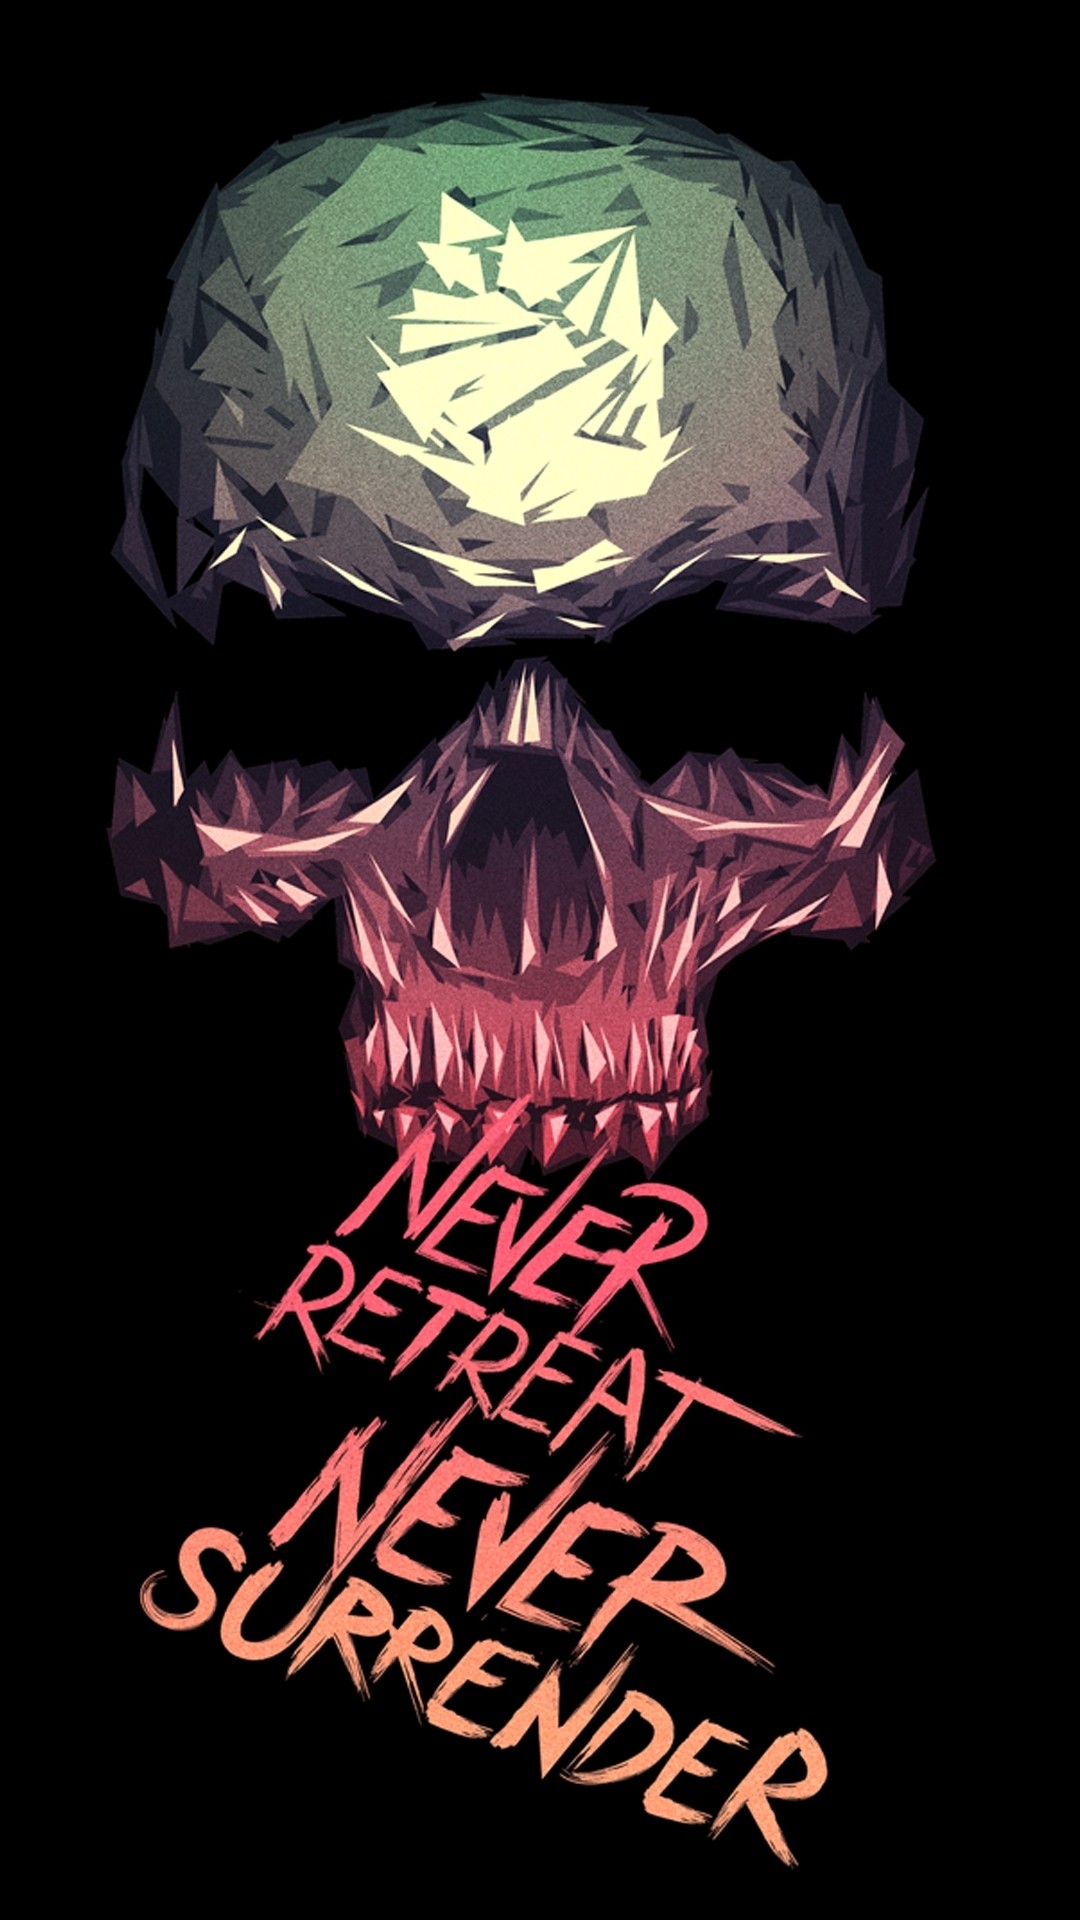 1080x1920 Never Retreat Never Surrender skull art